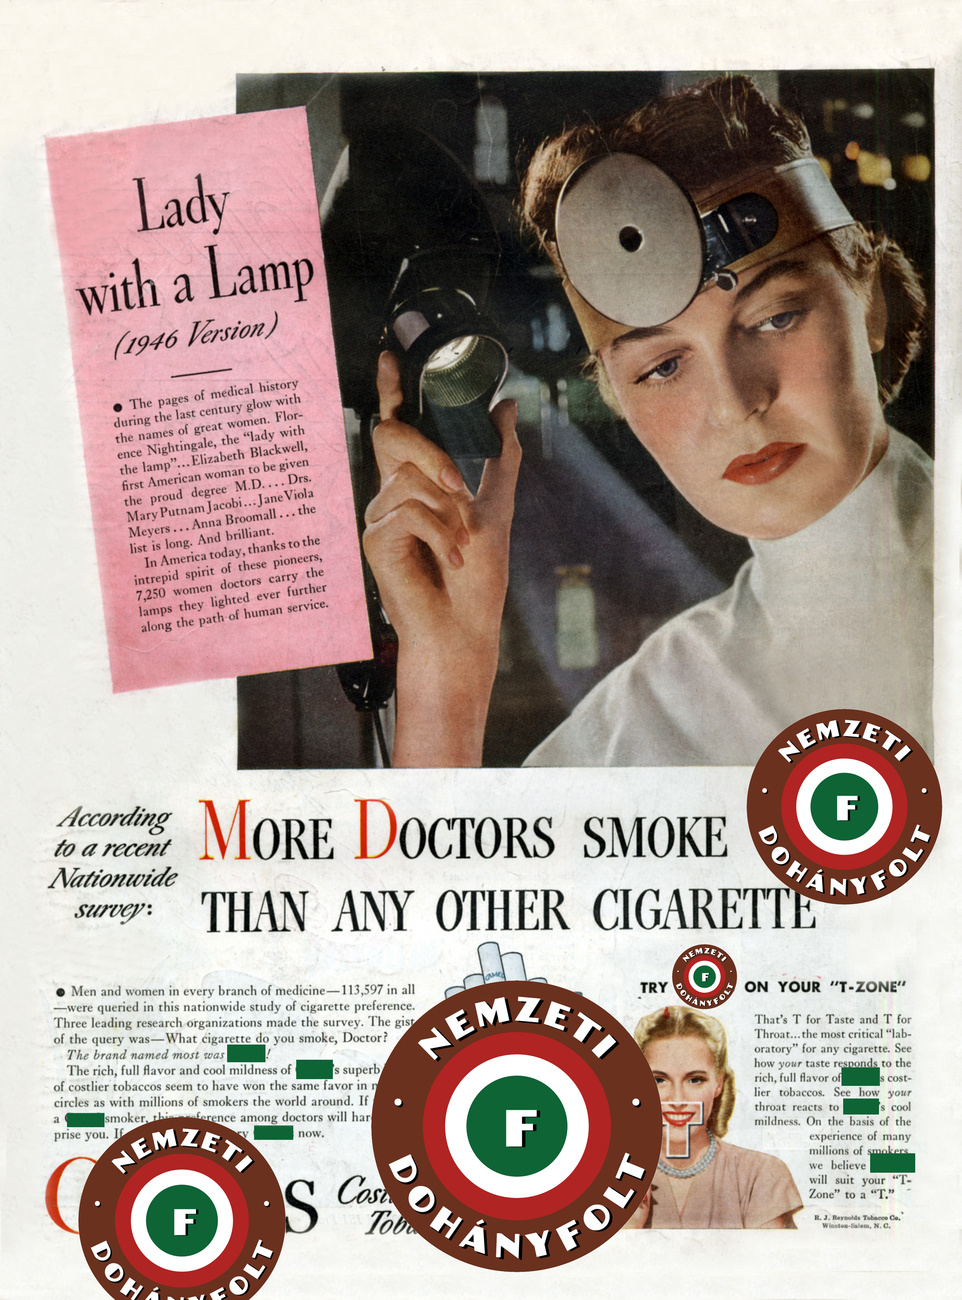 1965-ben a kongresszus kötelezte a gyártókat, hogy tegyenek figyelmeztető jelzést a dobozokra, két évvel később a rádióknak és tévéknek ingyenes műsoridőt kellett biztosítaniuk a dohányzás elleni közérdekű bejelentések számára, 1971-ben pedig betiltották a tévés és rádiós cigarettareklámokat. Az 1970-es években indultak el a nemdohányzók védelméért küzdő mozgalmak, ekkor kezdtek nemdohányzó részleget kialakítani a repülőkön, az éttermekben és más helyeken. Ezt végül a teljes dohányzási tilalom követte.